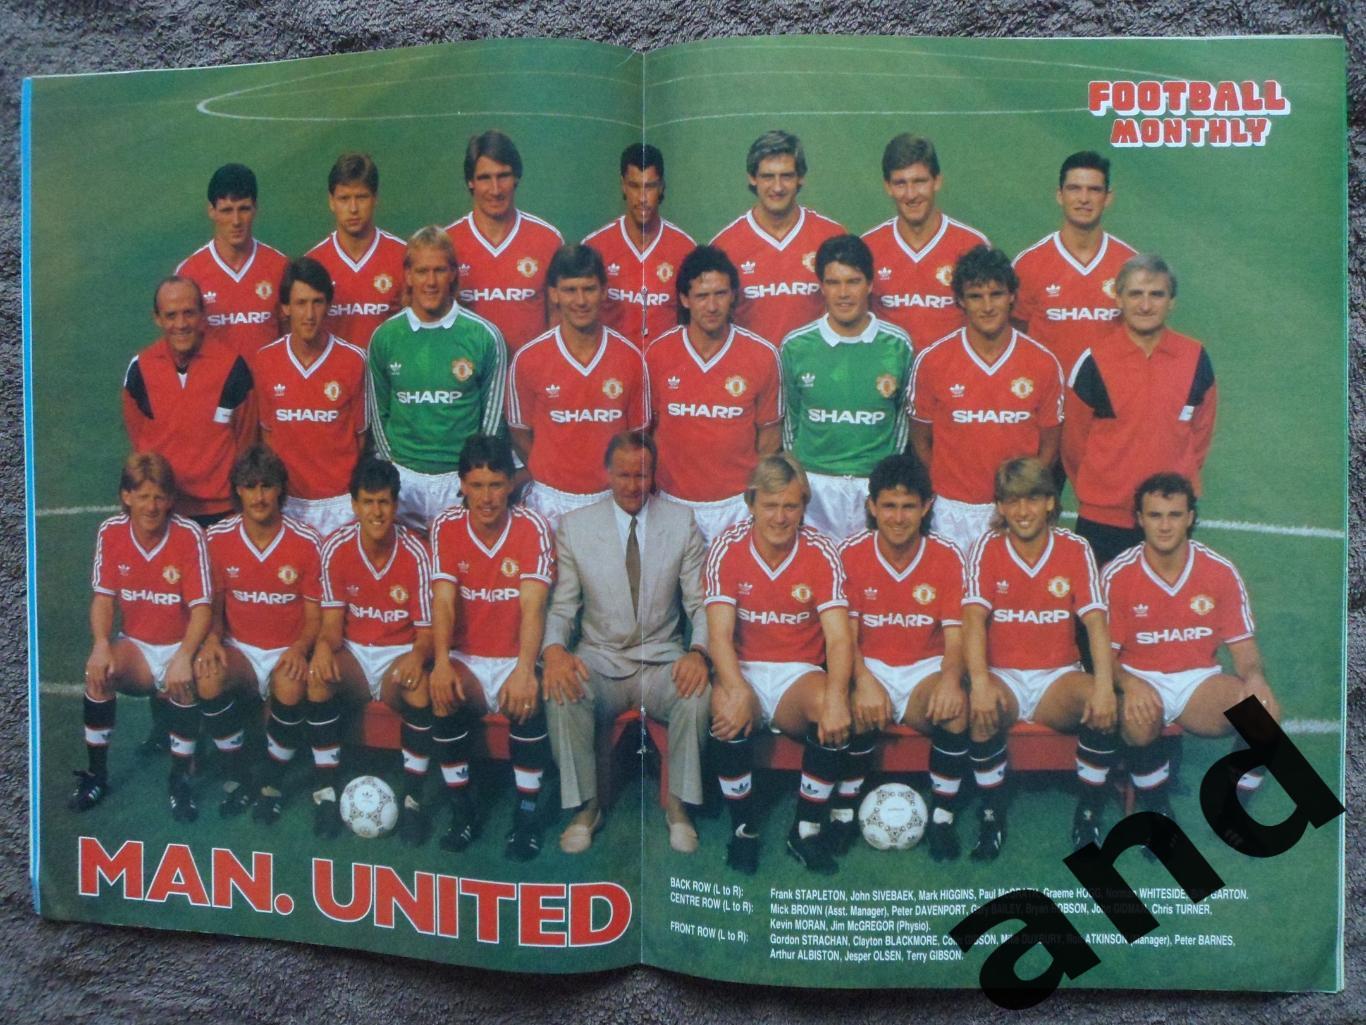 Football Monthly окт 1986 большой постер Манчестер юнайтед 1